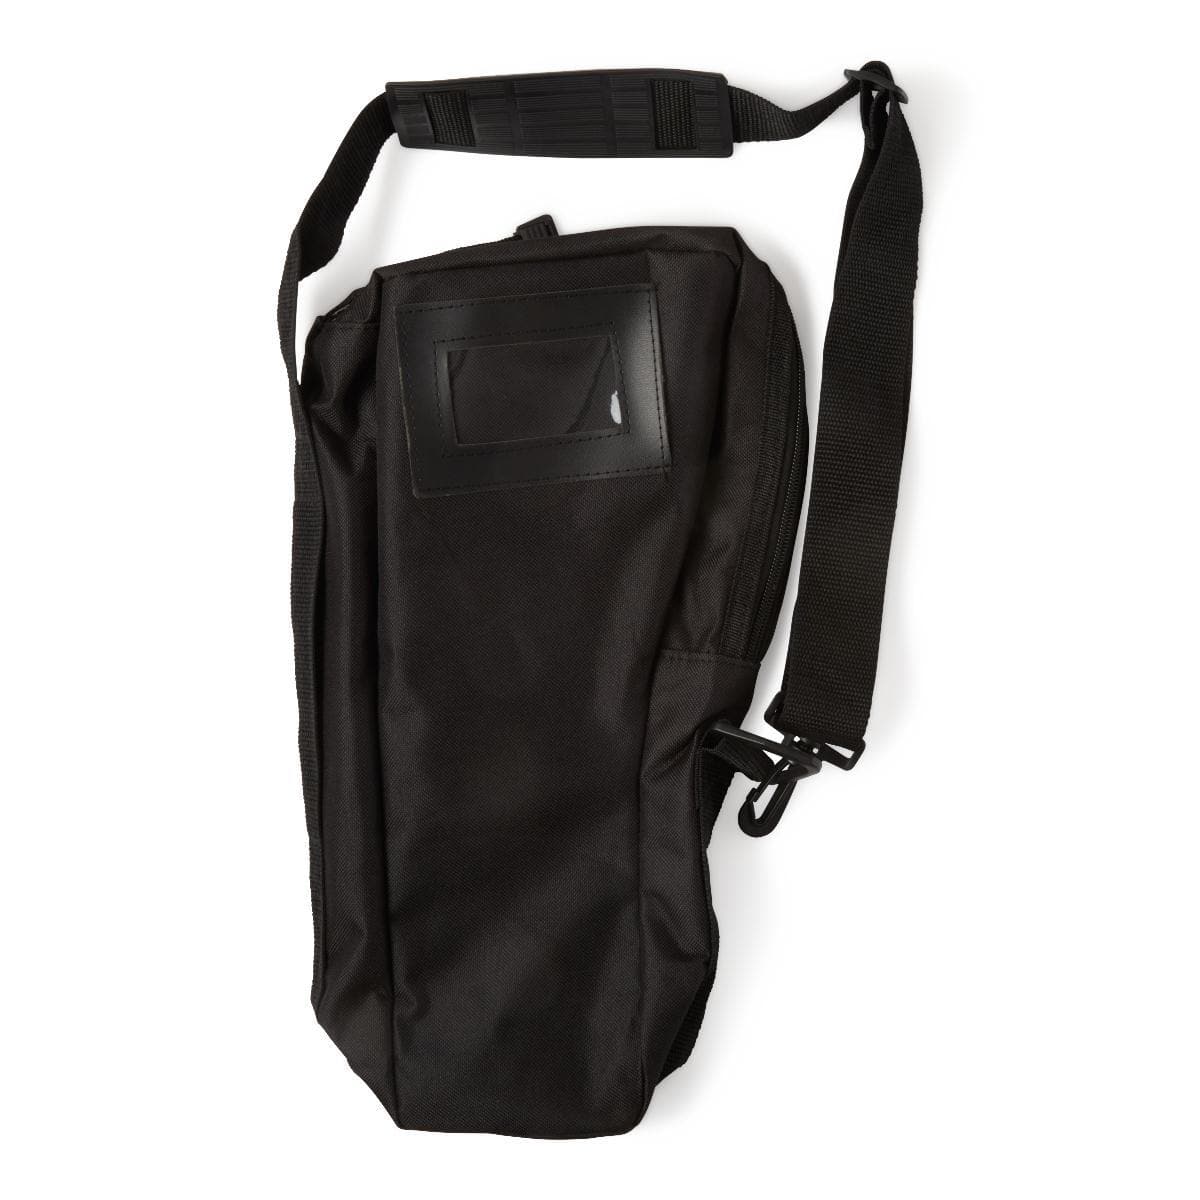 Medline Oxygen Cylinder Shoulder Bags - Senior.com Oxygen Bags